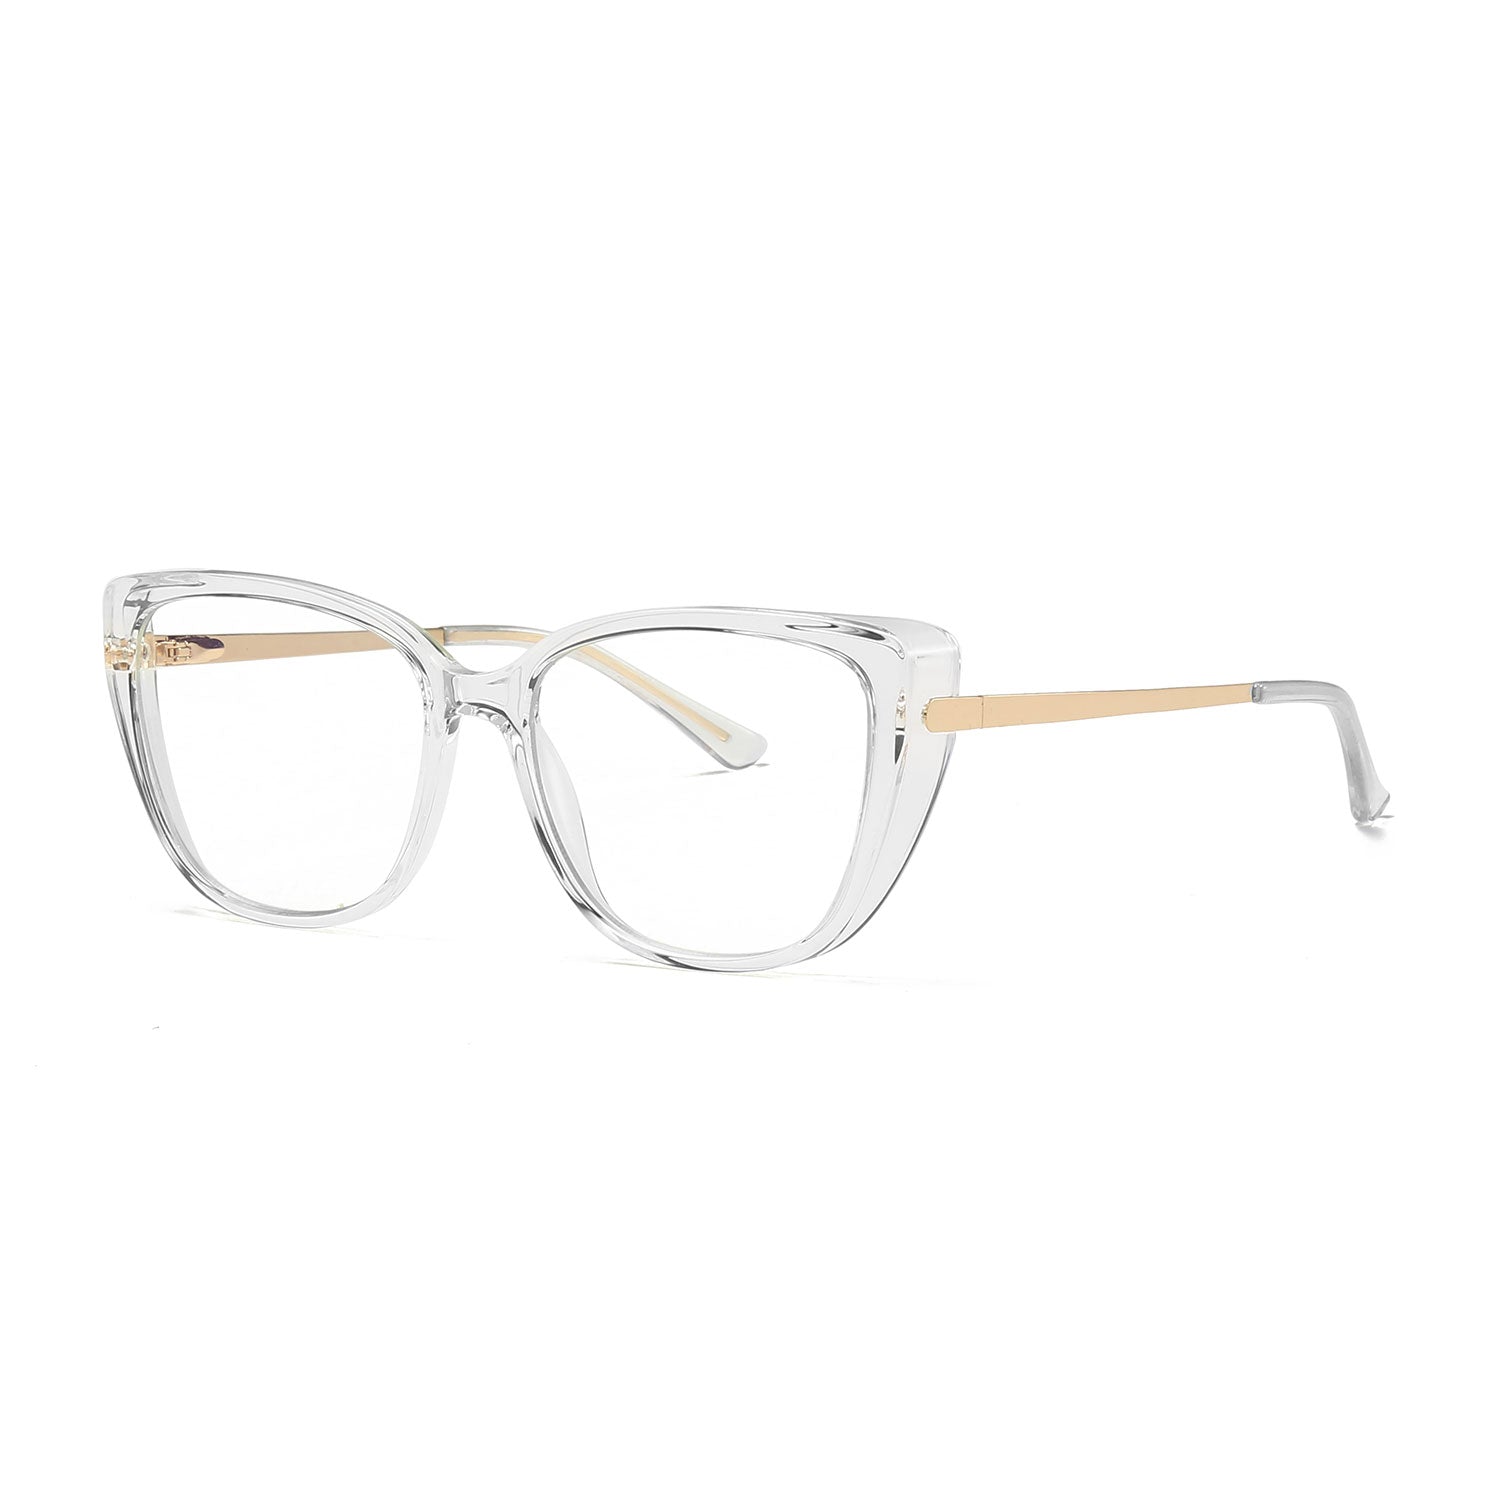 Bink | Oval/Clear/TR90 - Eyeglasses | ELKLOOK